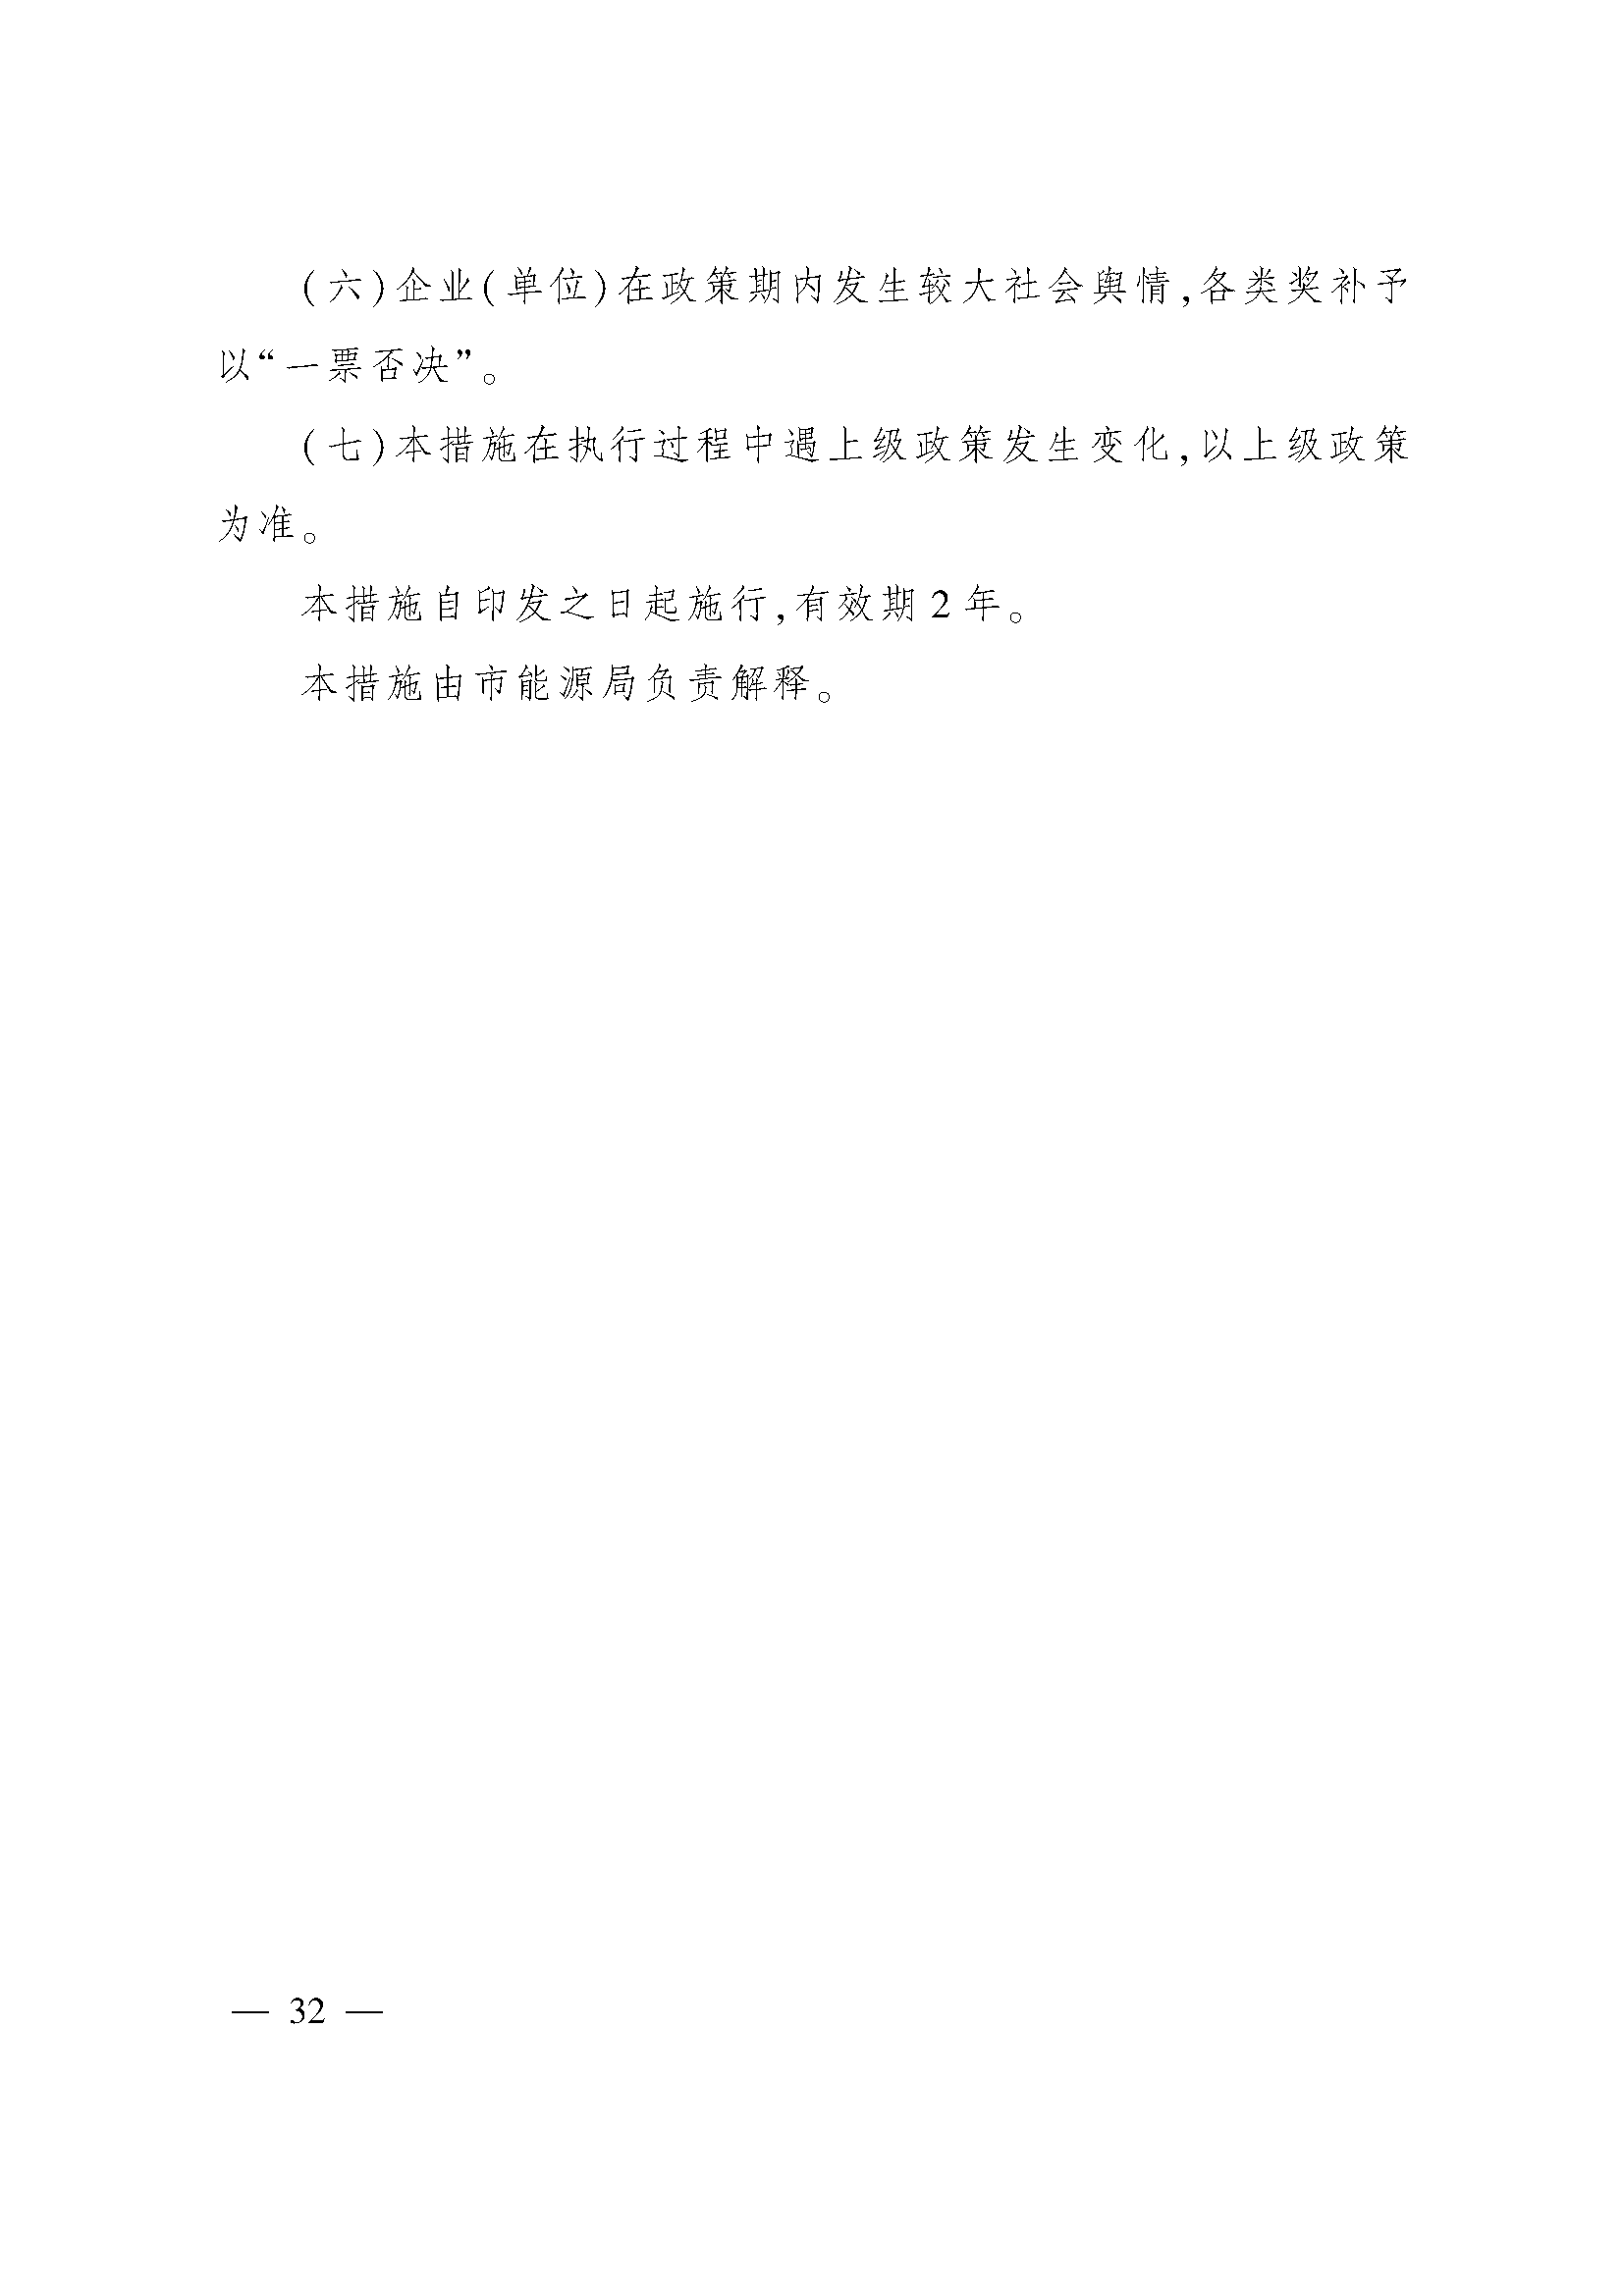 太原市人民政府办公室关于印发太原市招商引资若干措施的通知(图32)